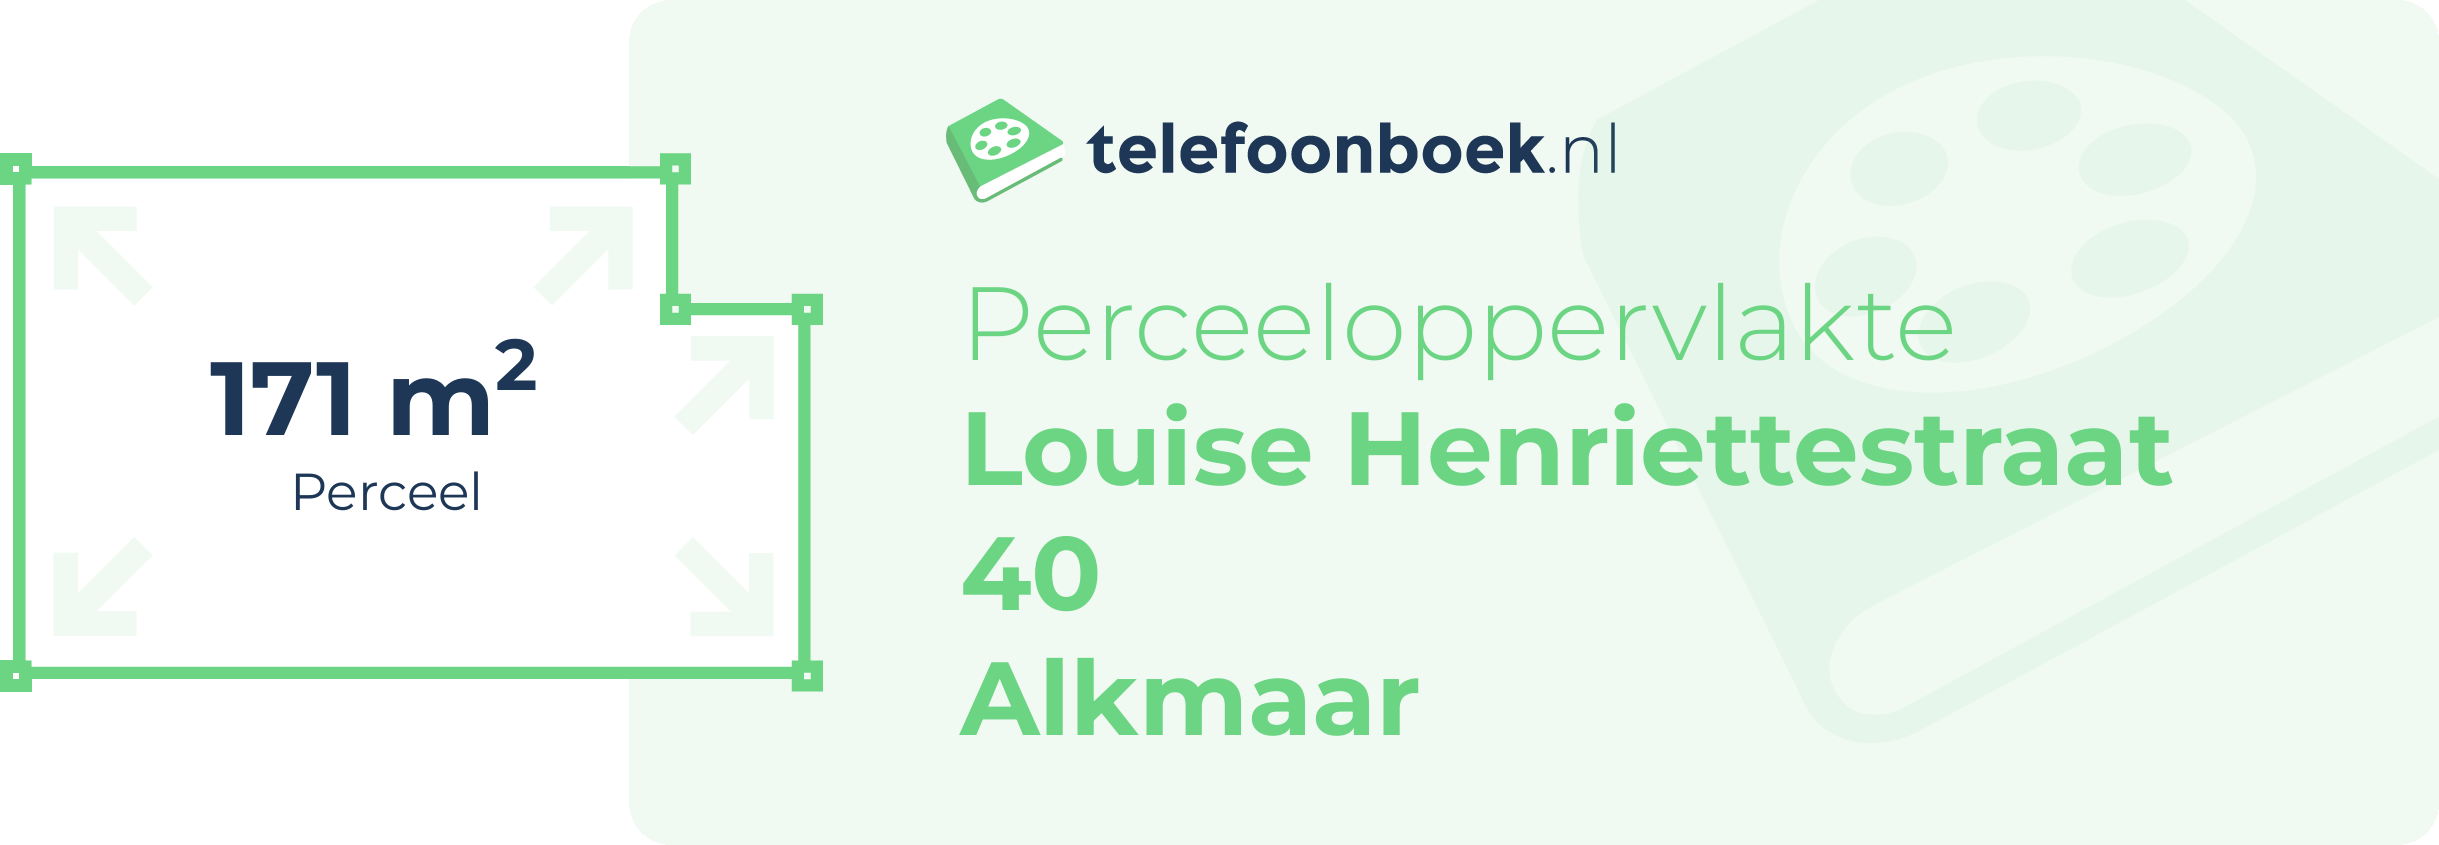 Perceeloppervlakte Louise Henriettestraat 40 Alkmaar